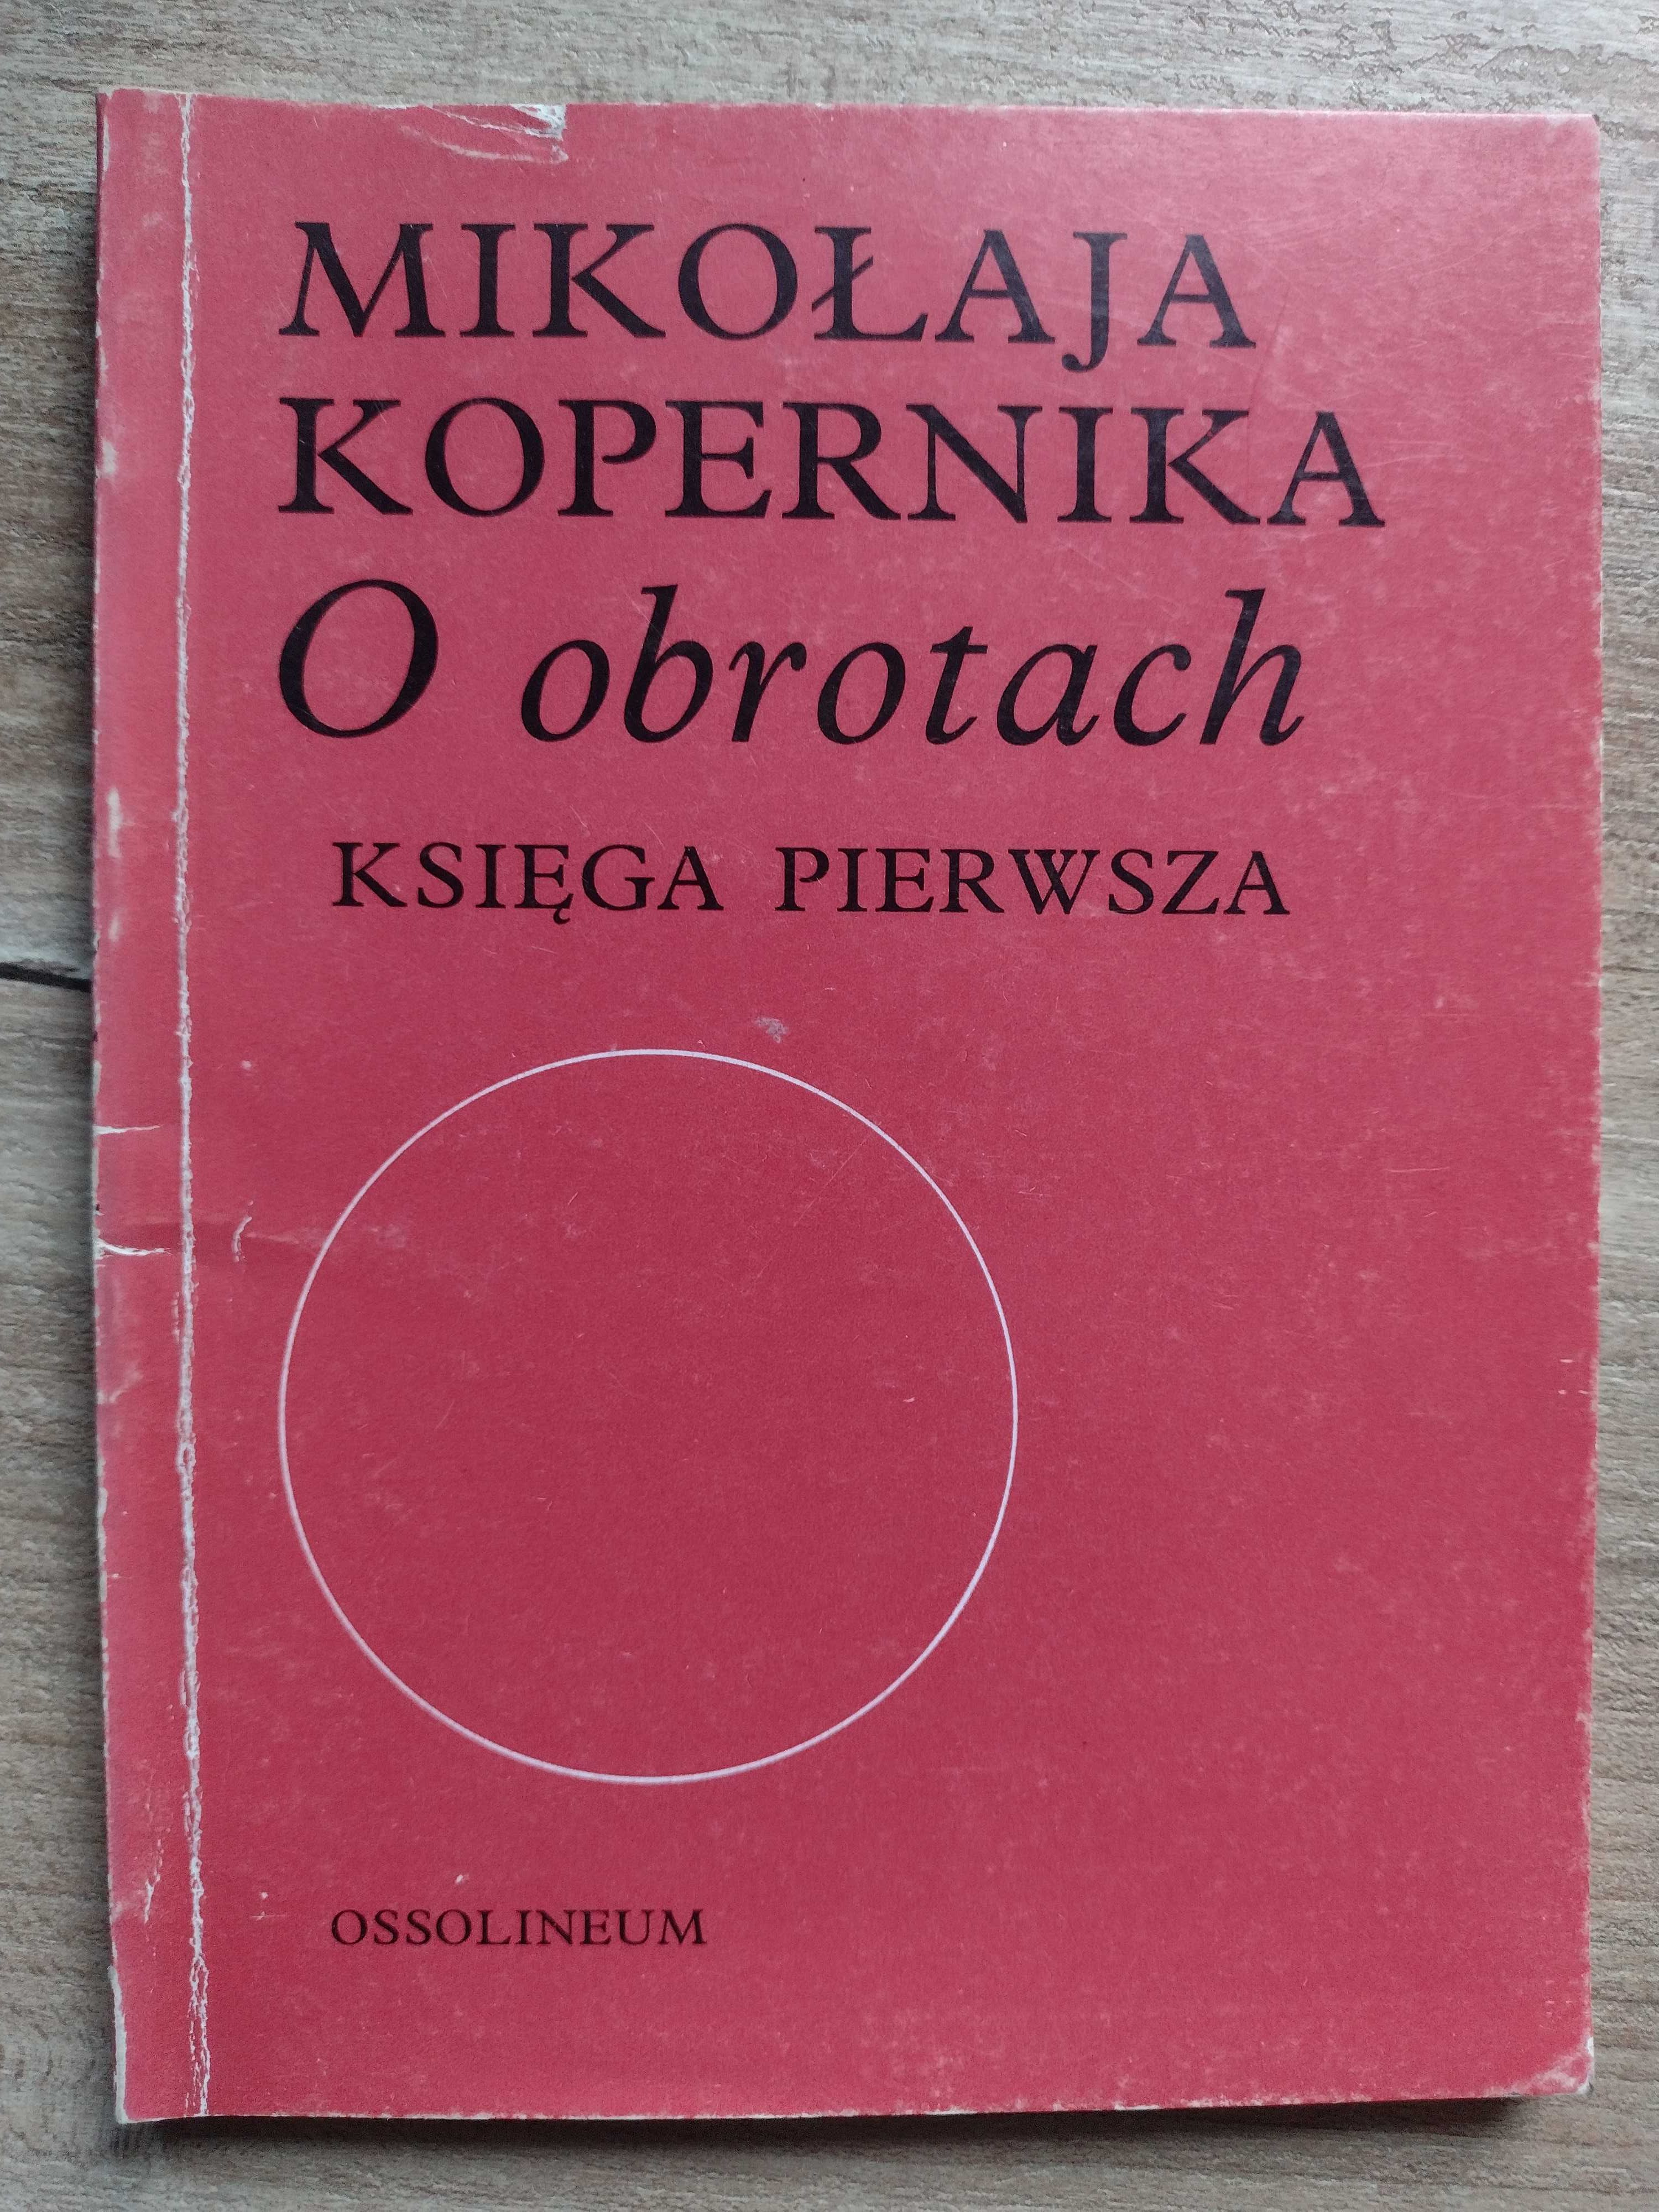 Mikołaj Kopernik - O obrotach - Księga pierwsza